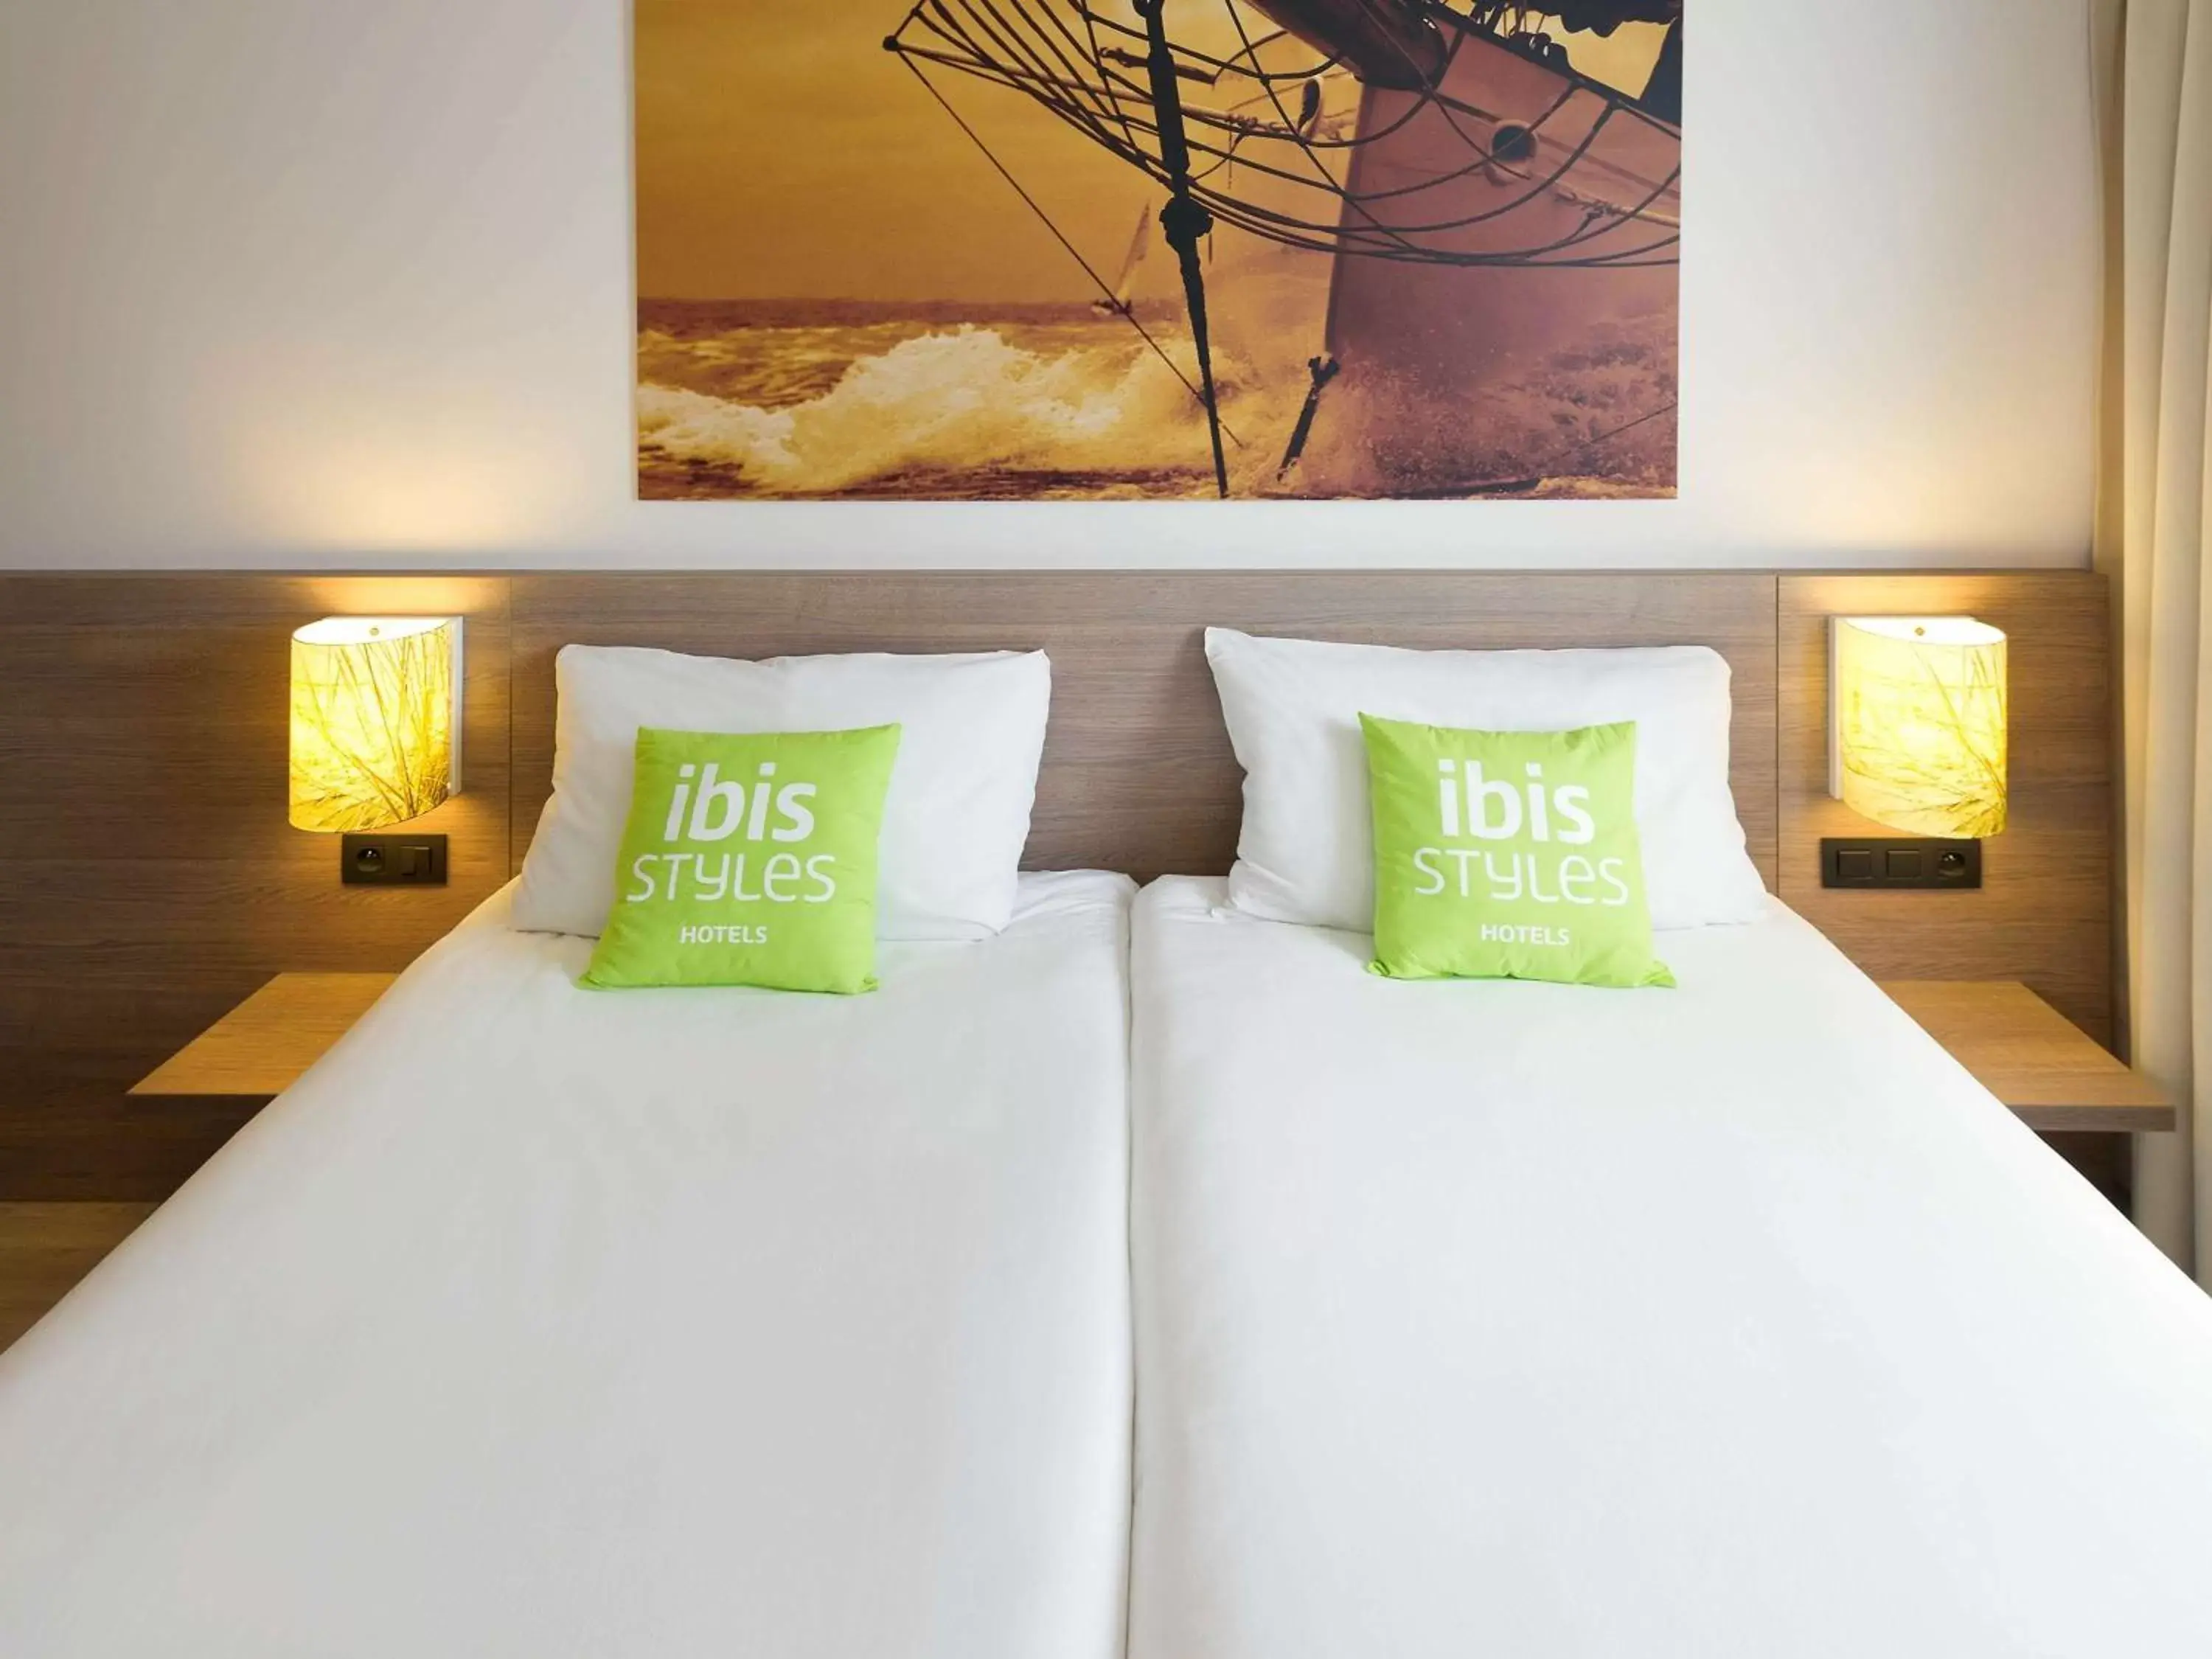 Standard Double Room in ibis Styles Zeebrugge